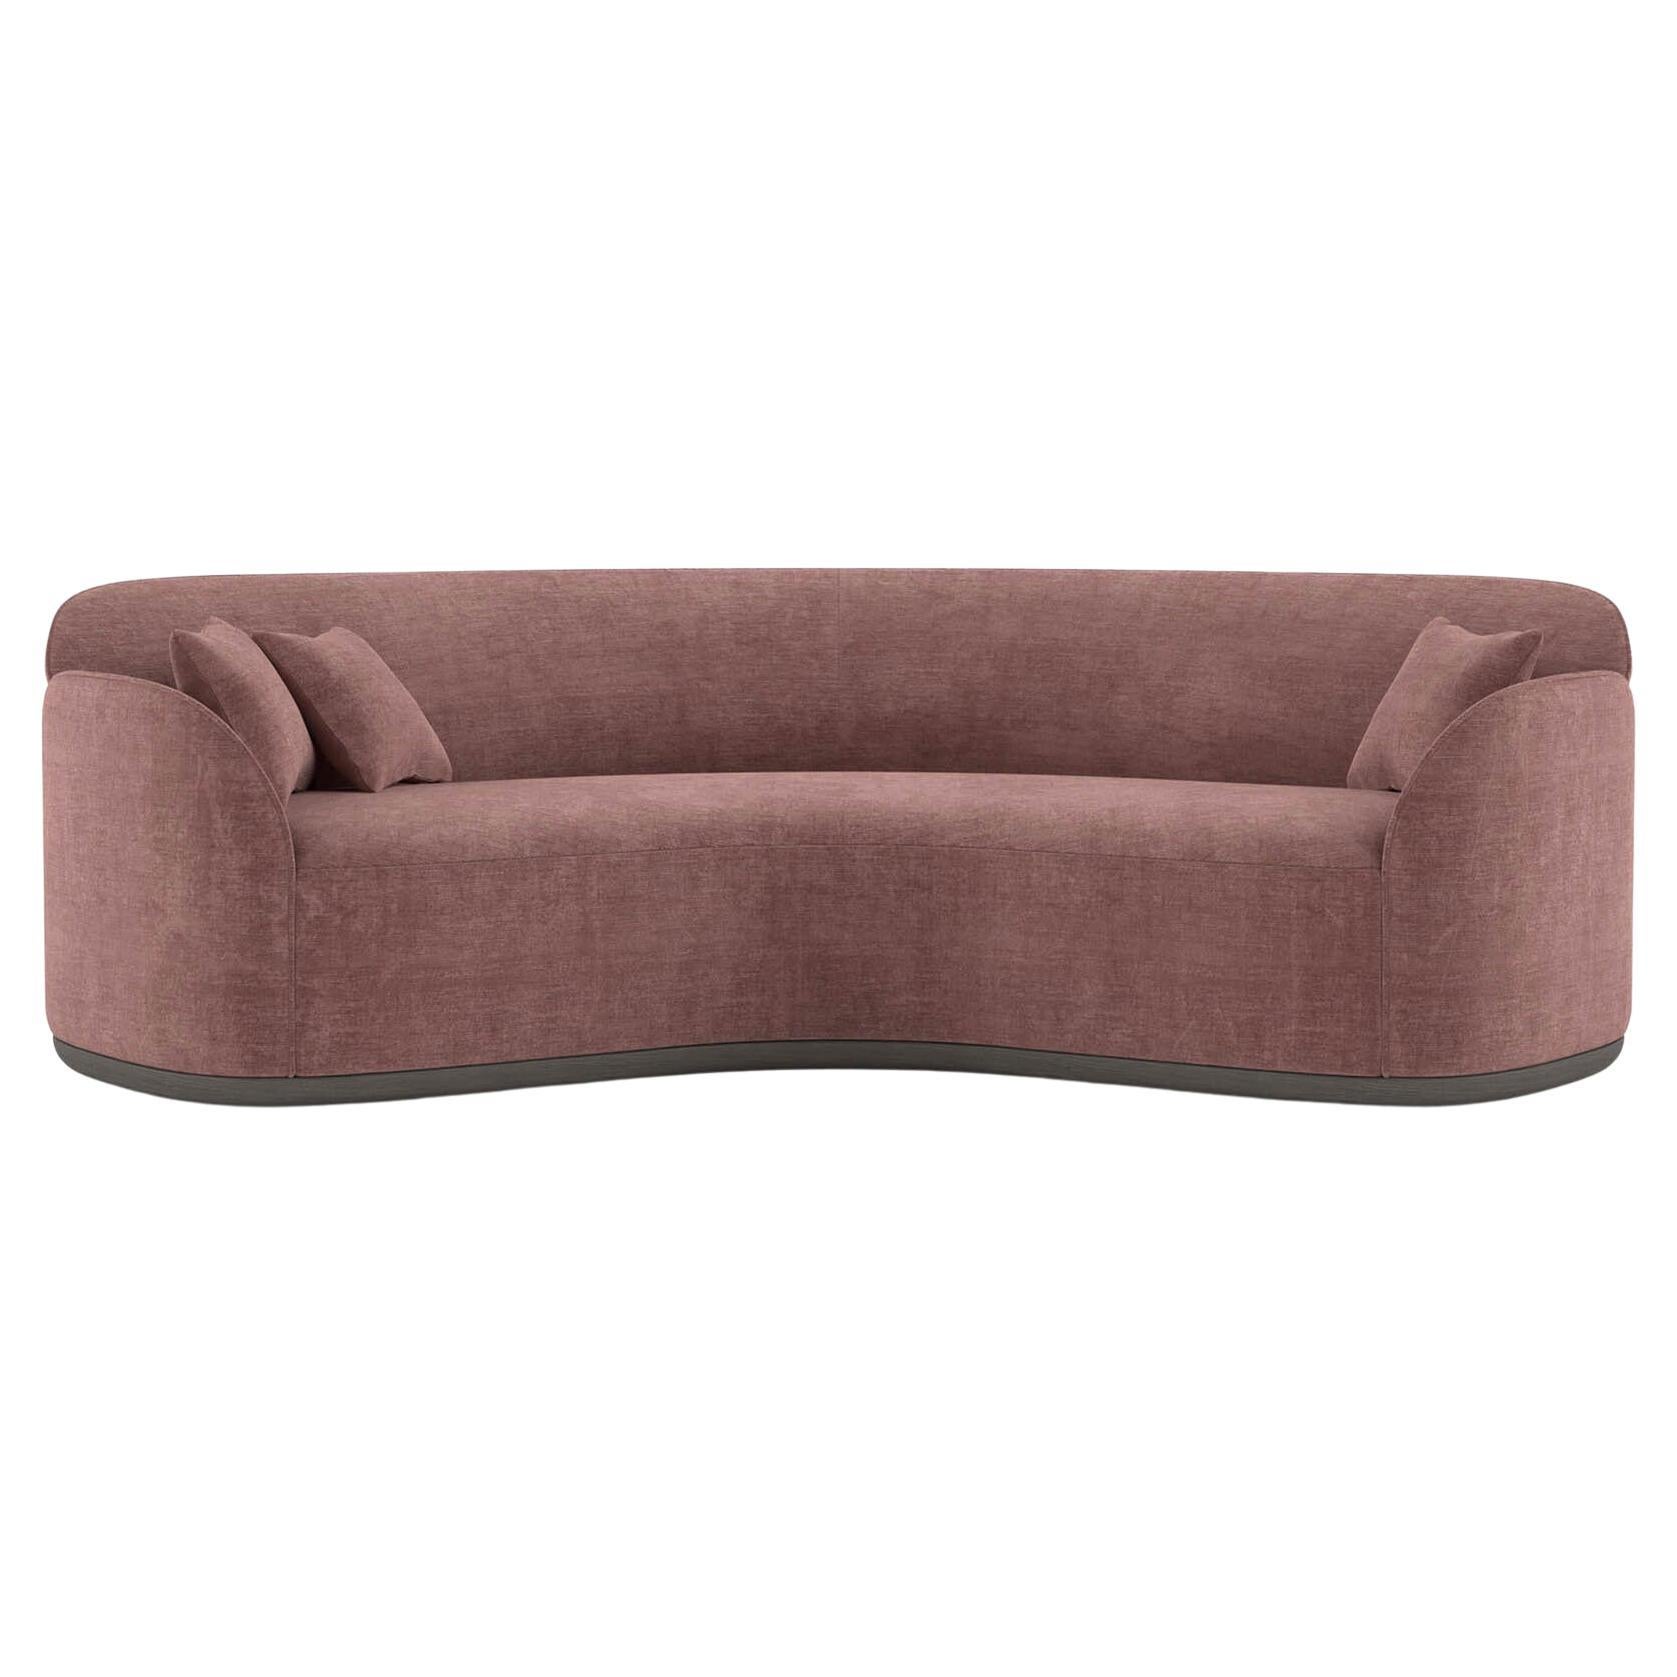 Contemporary Curved Sofa 'Unio' by Poiat, Pergamena 017 Fabric by Dedar